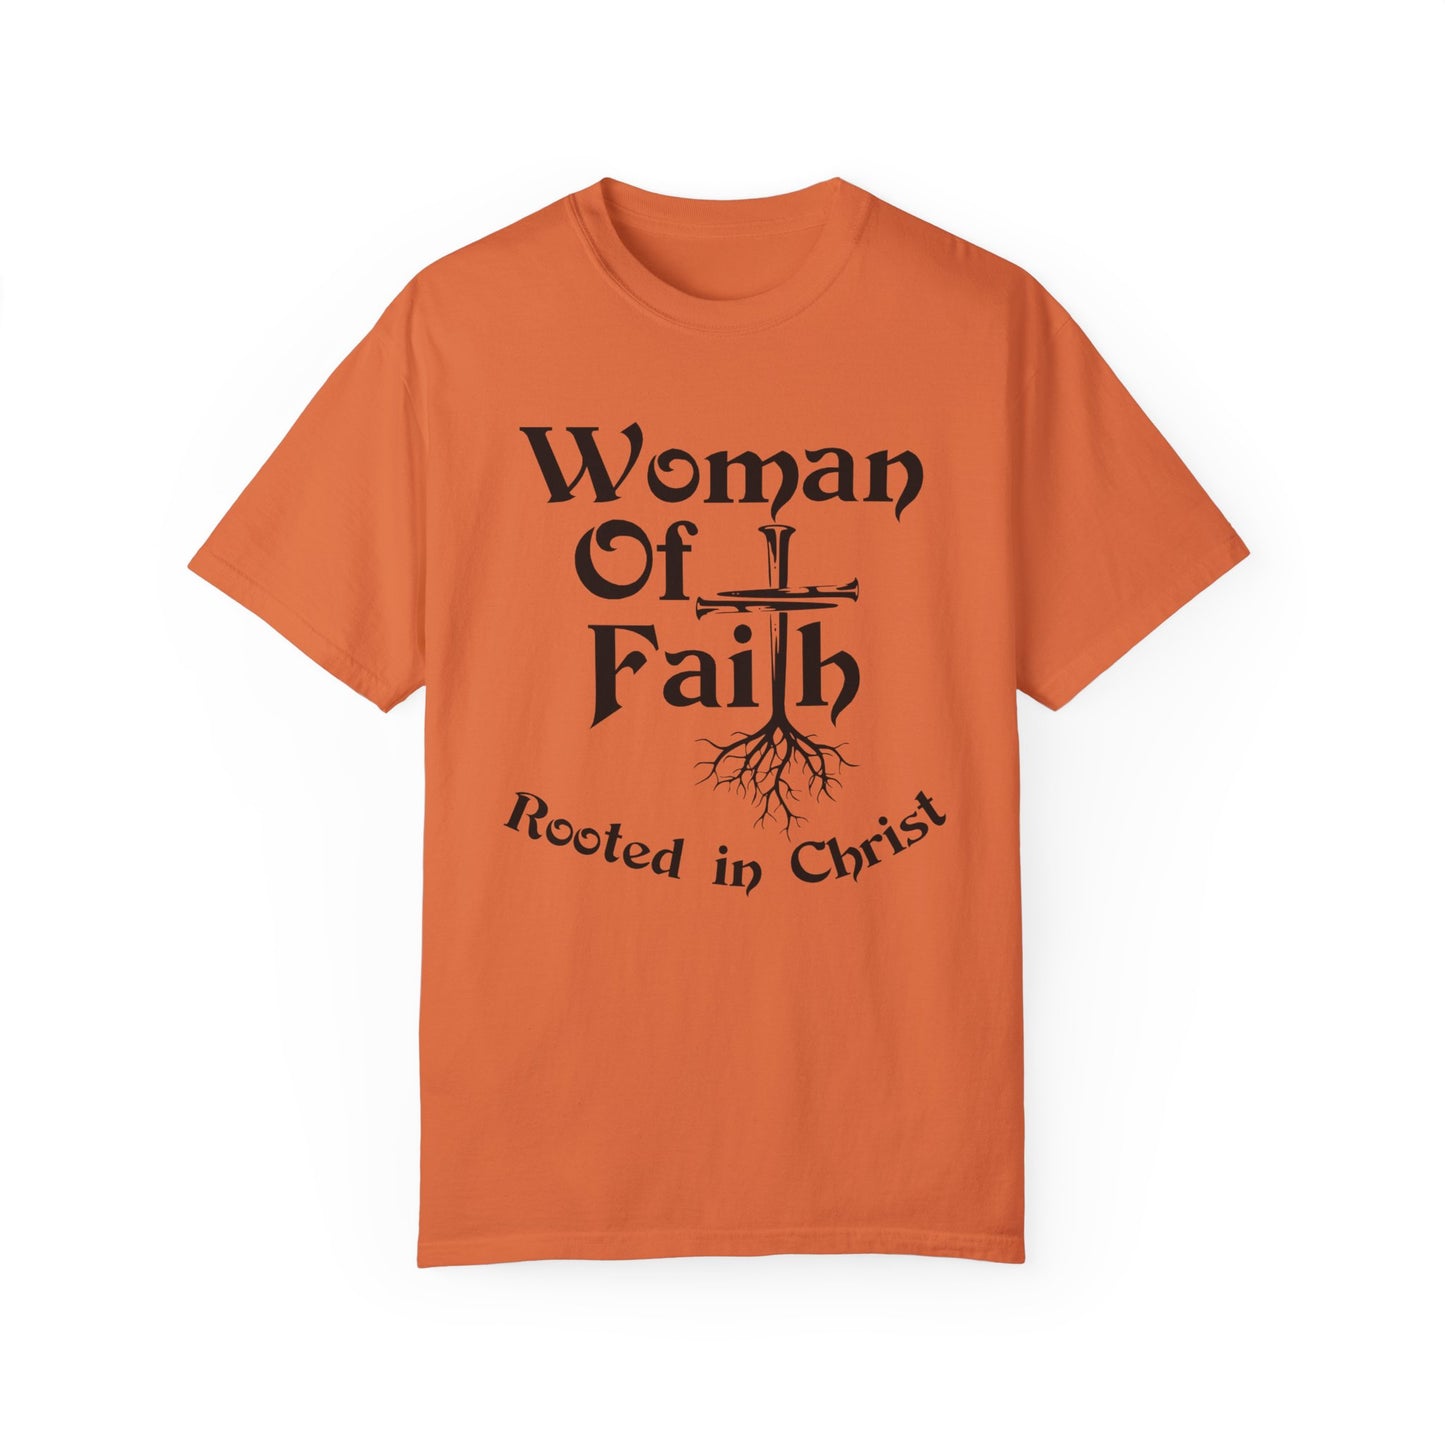 Woman of Faith T-shirt